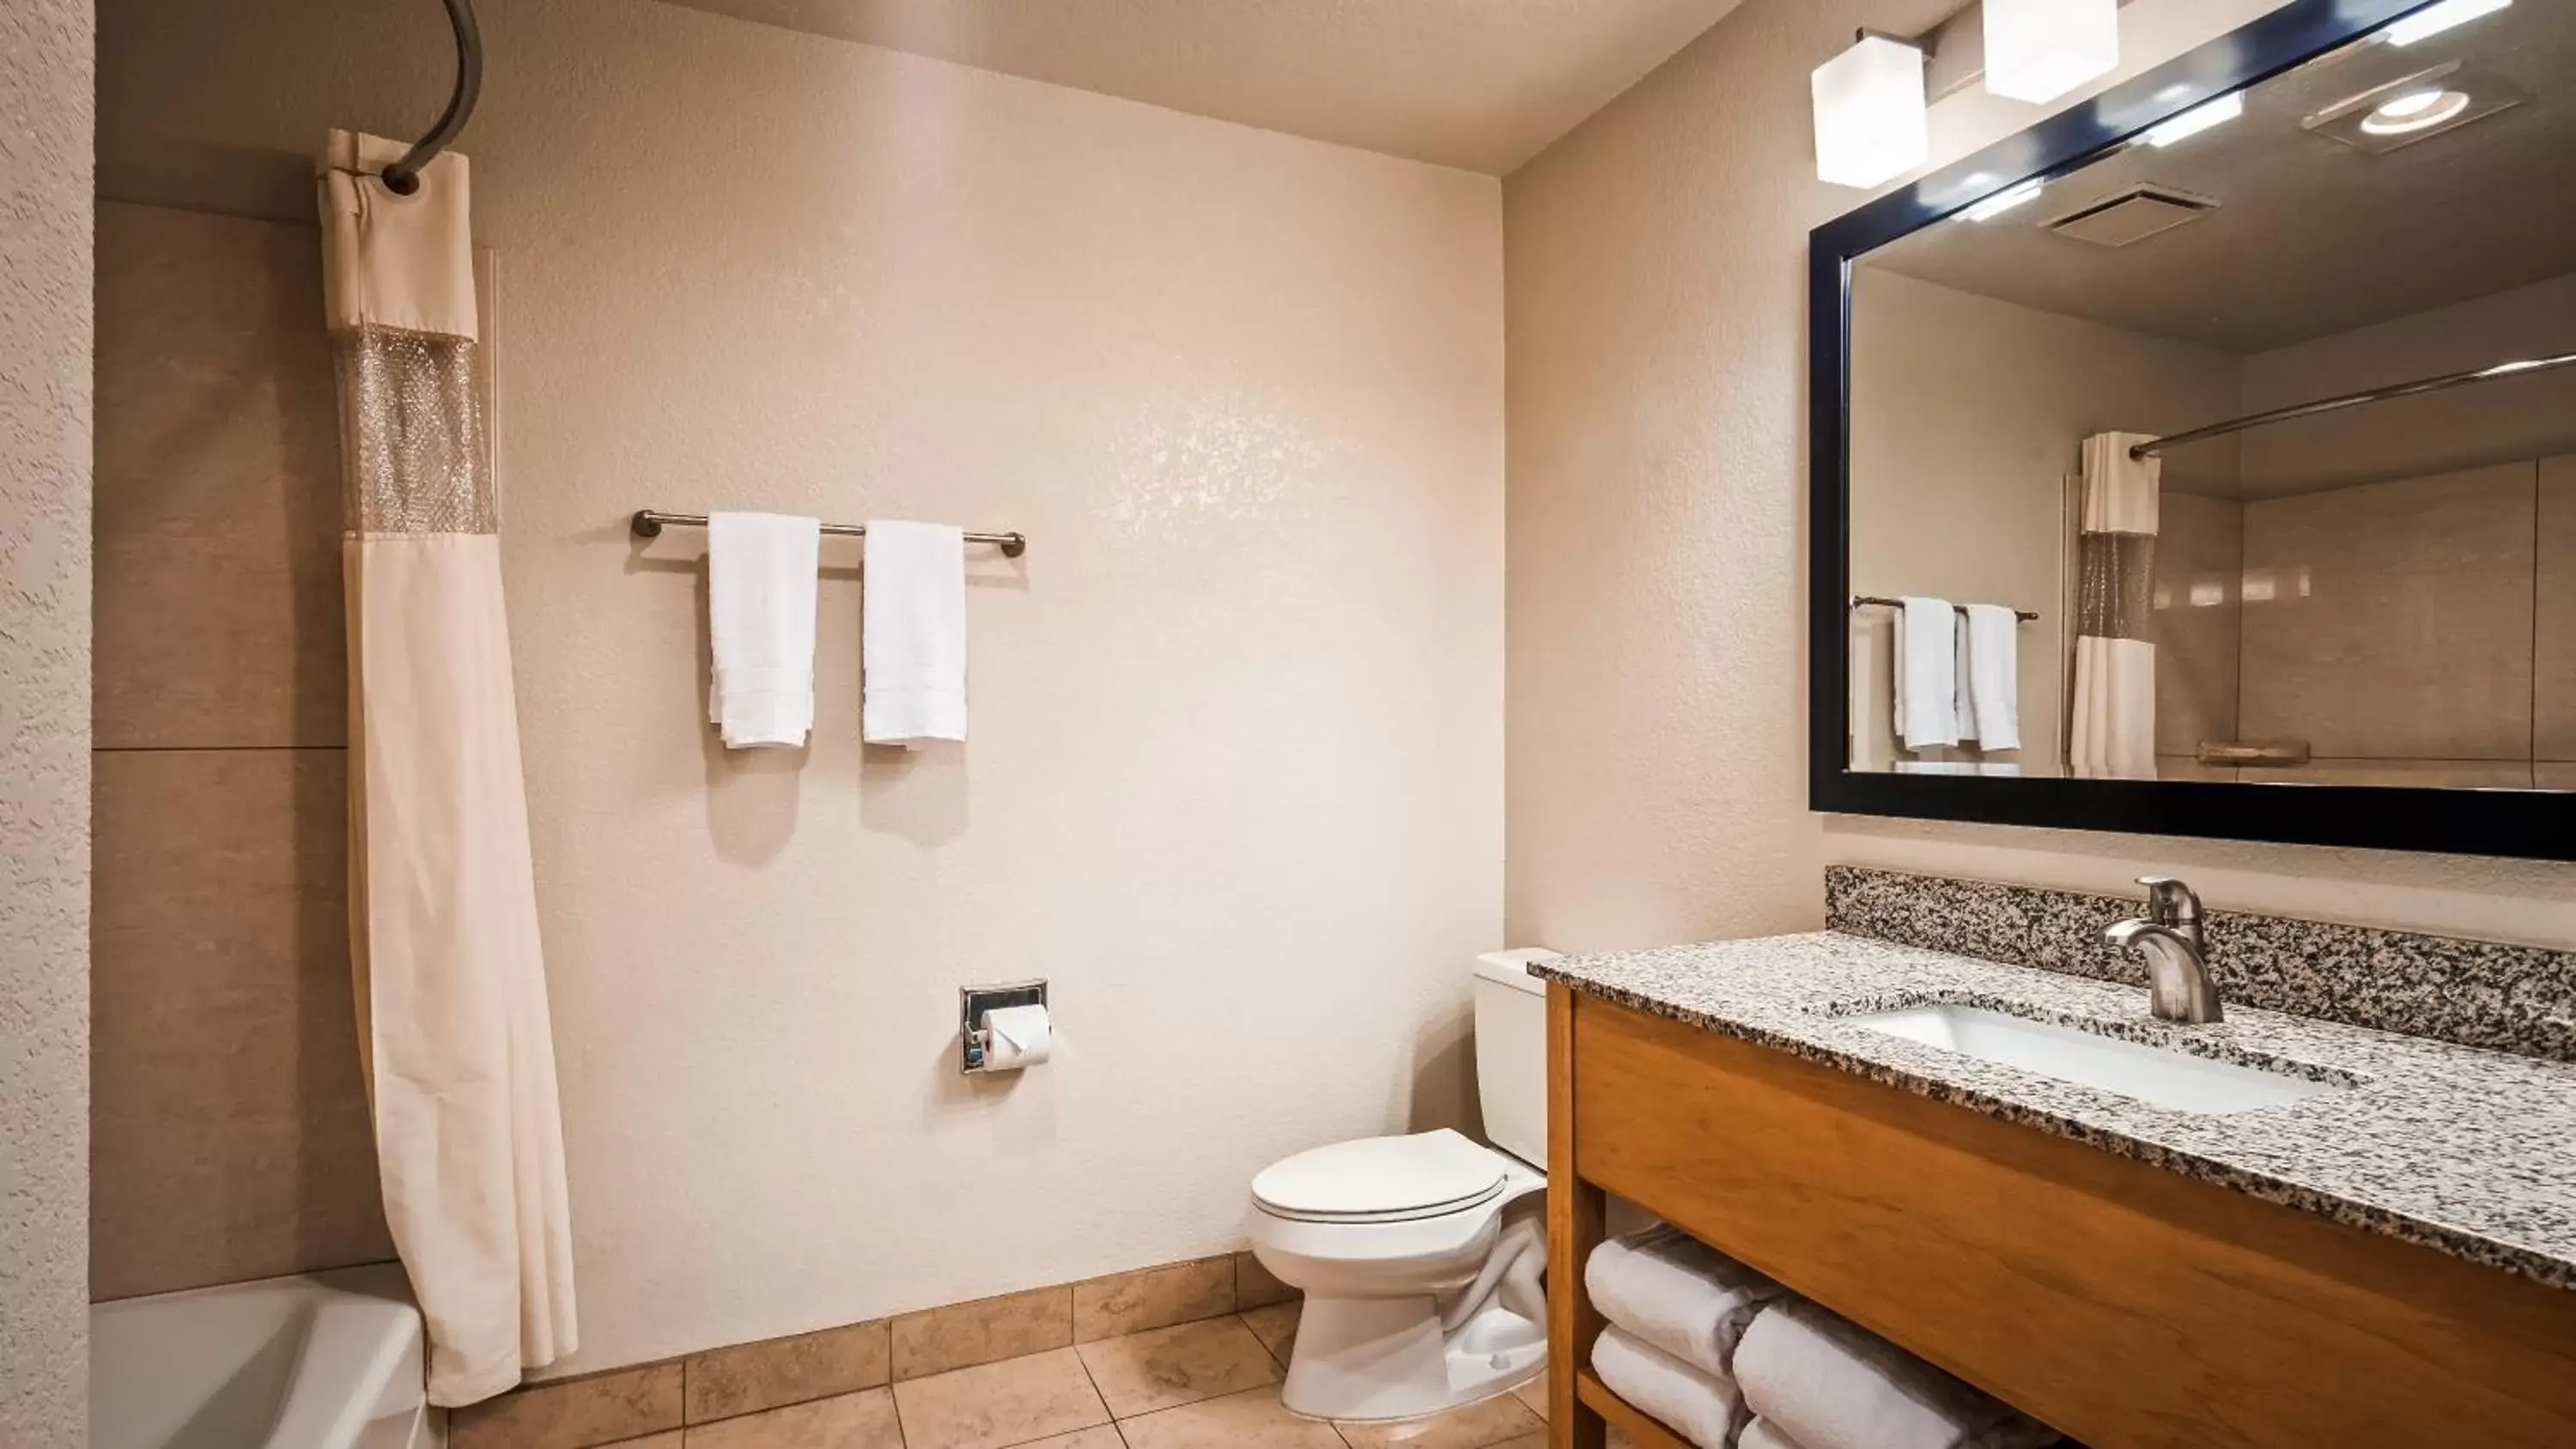 Toilet, Bathroom in Best Western Plus Executive Inn & Suites